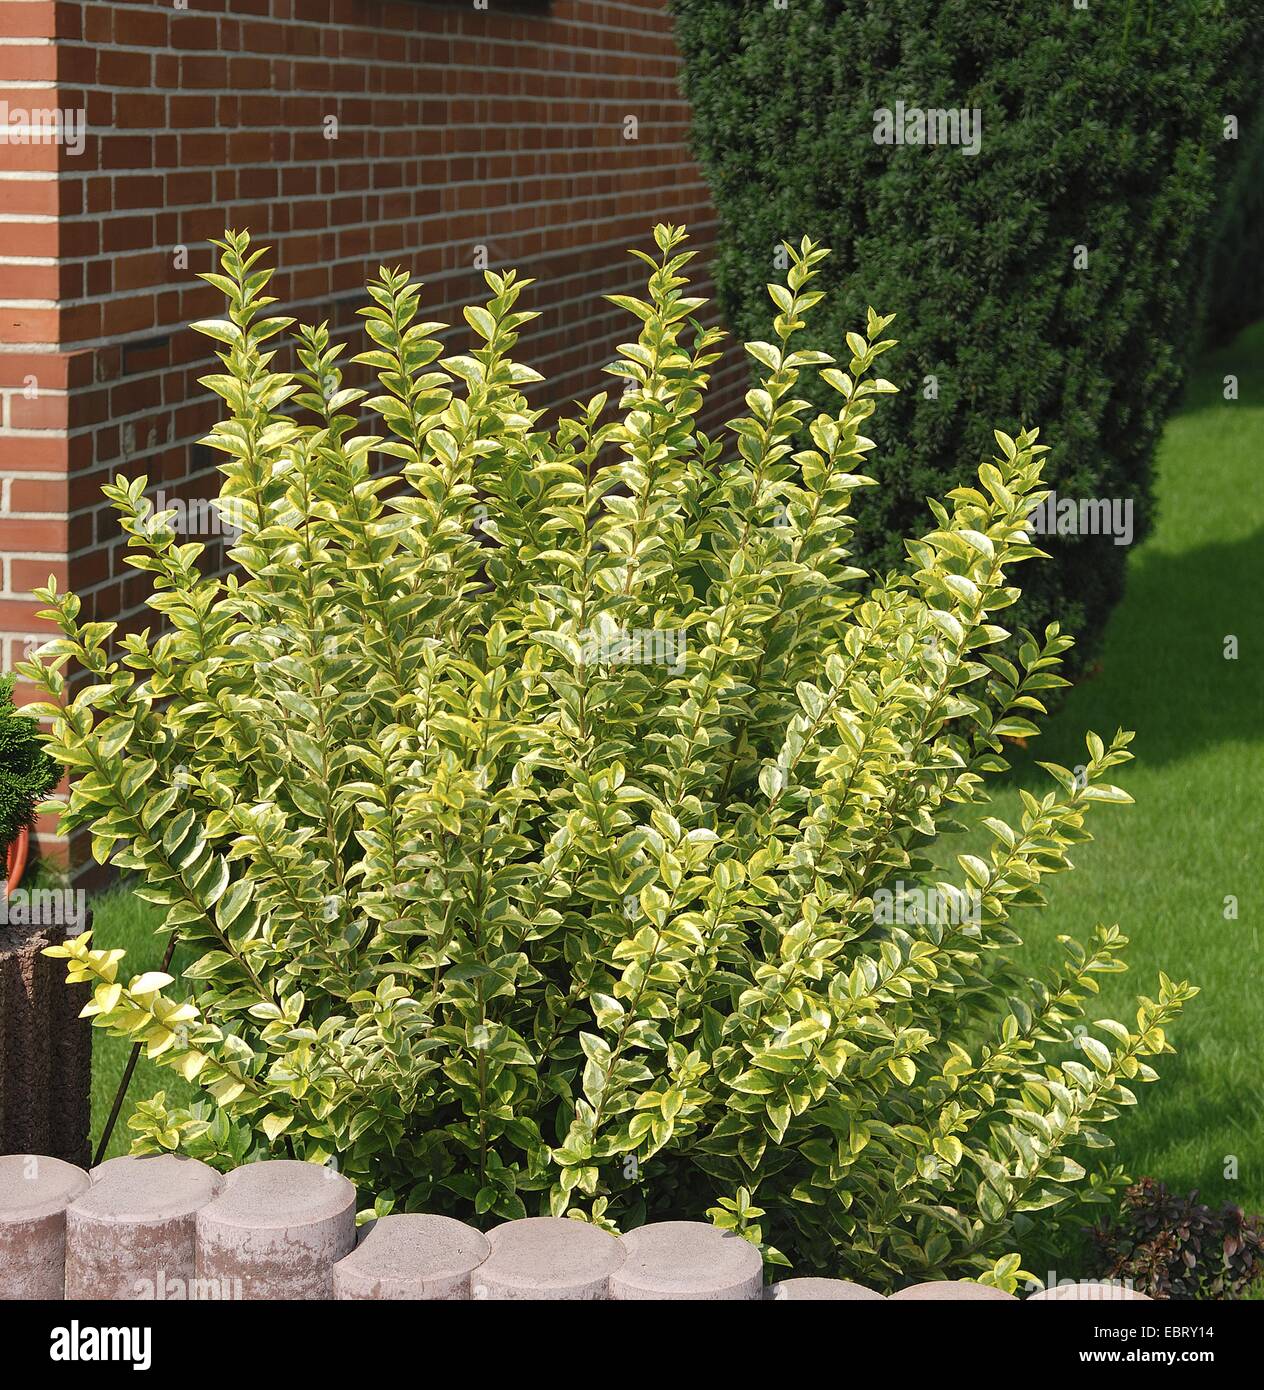 california privet (Ligustrum ovalifolium 'Aureum', Ligustrum ovalifolium Aureum), cultivar Aureum in a front yard Stock Photo